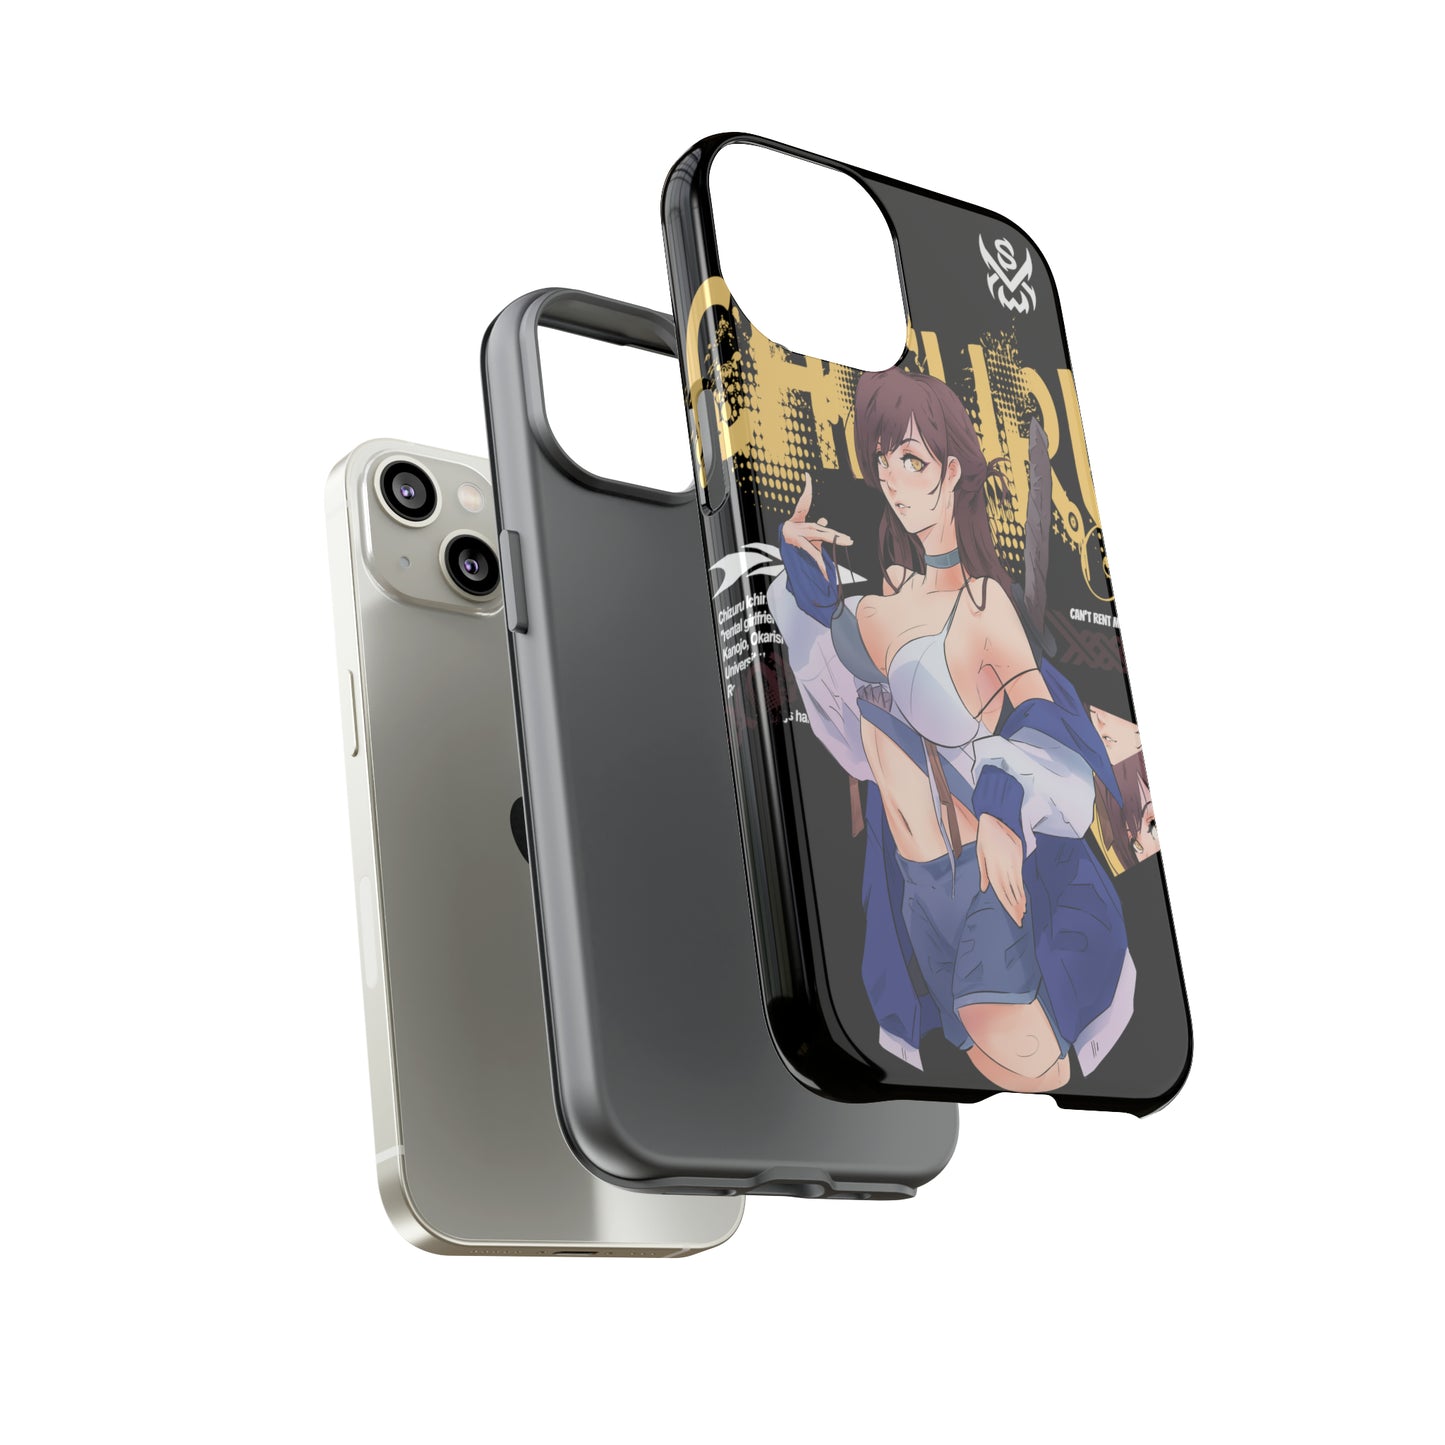 Chizuru / iPhone Cases - LIMITED